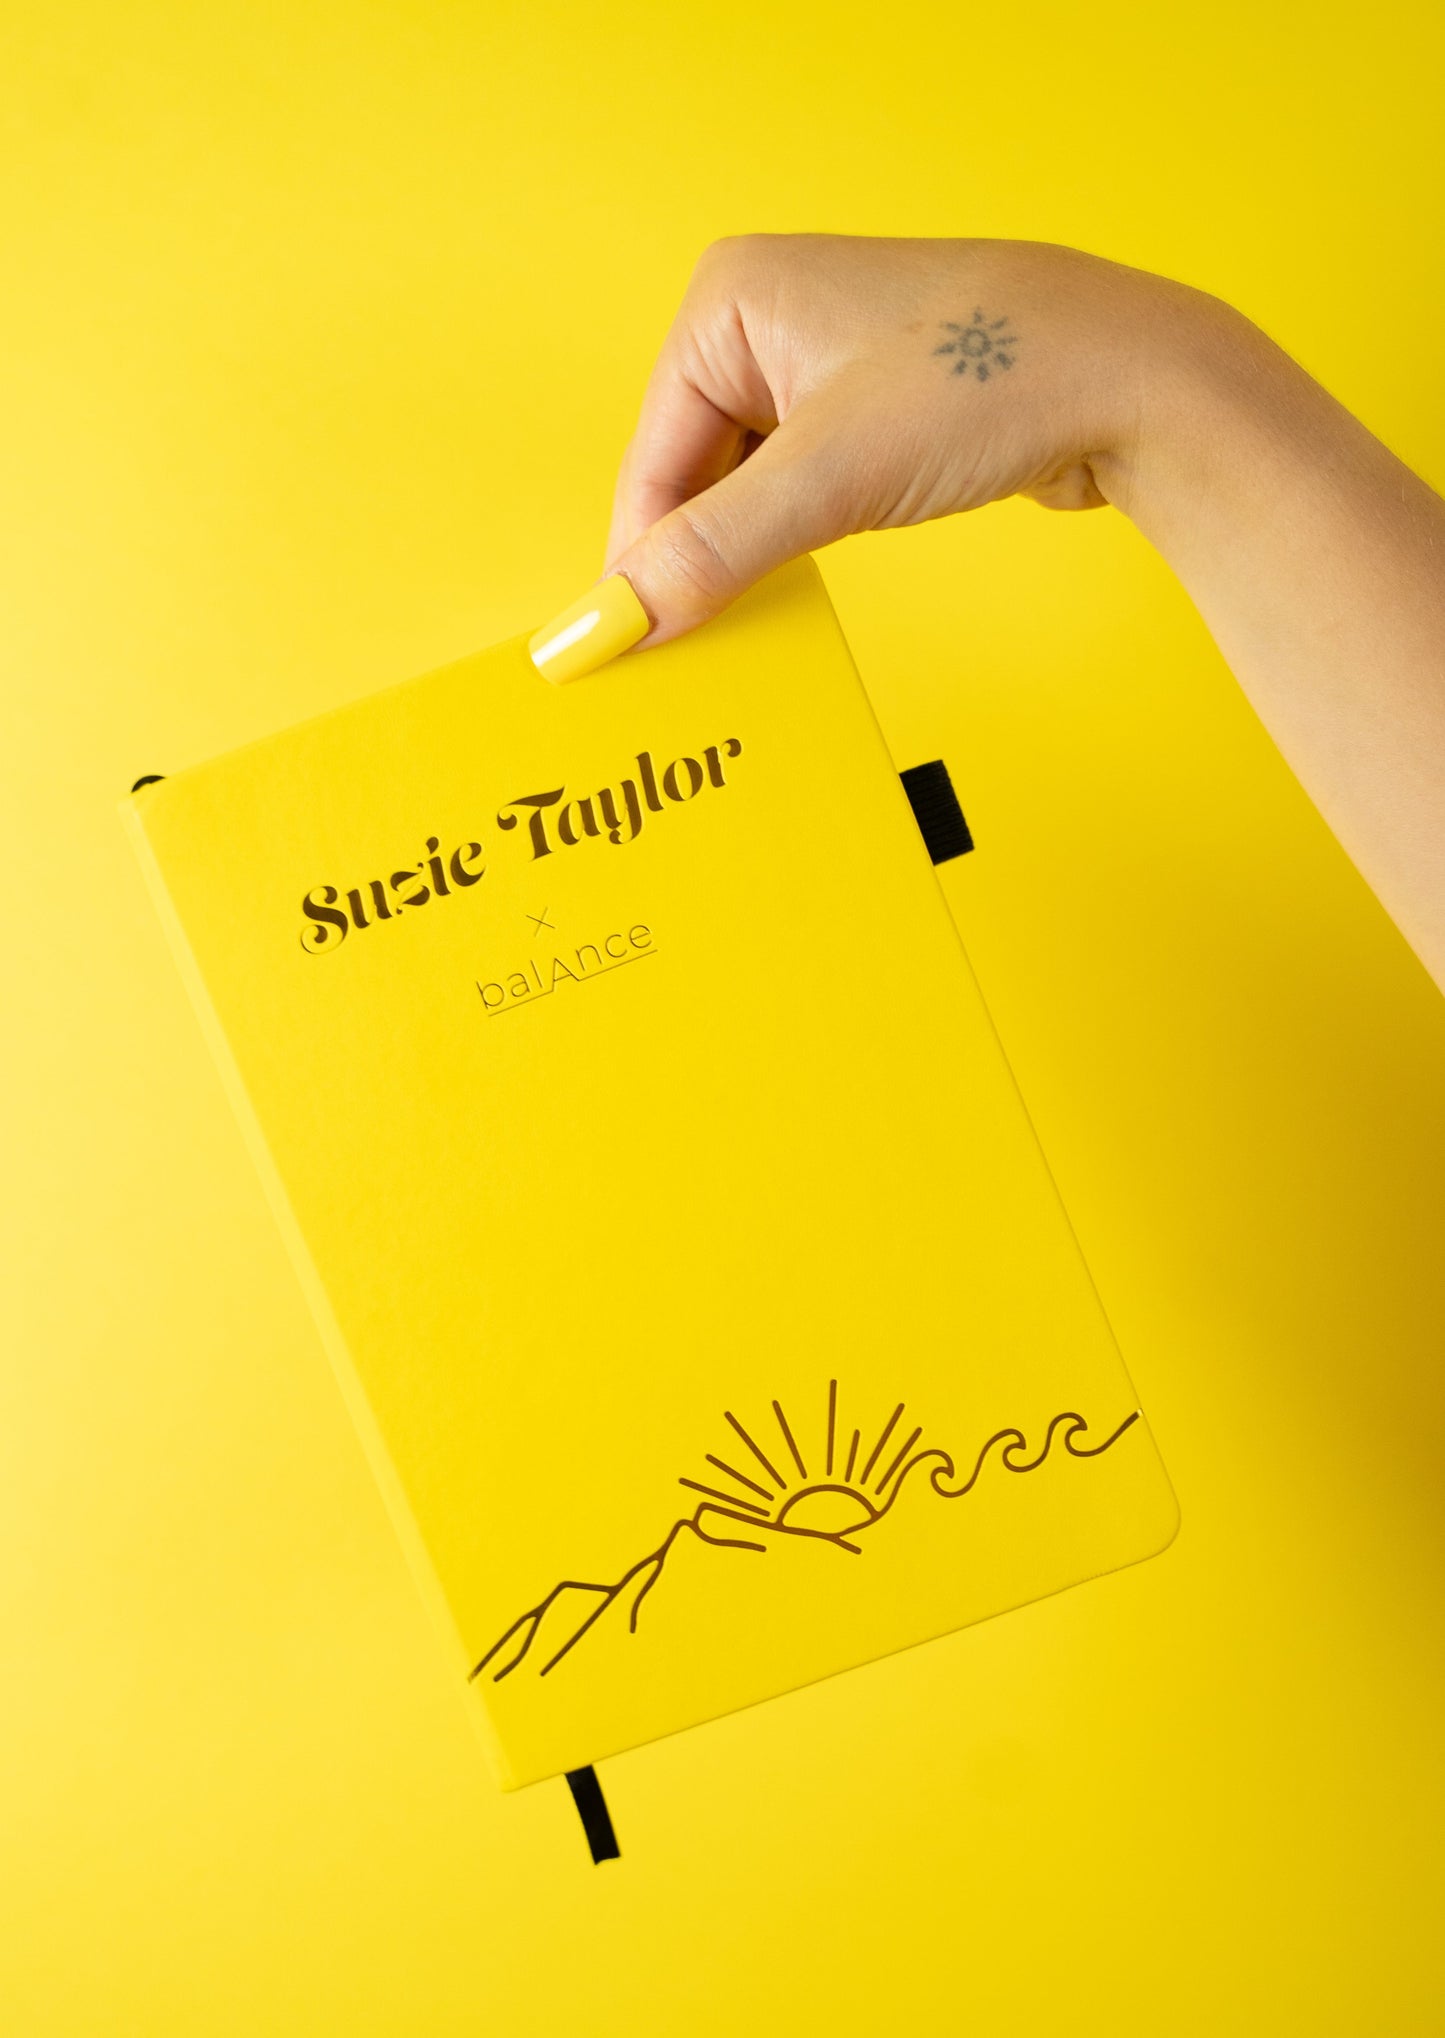 Suzie's Notebook